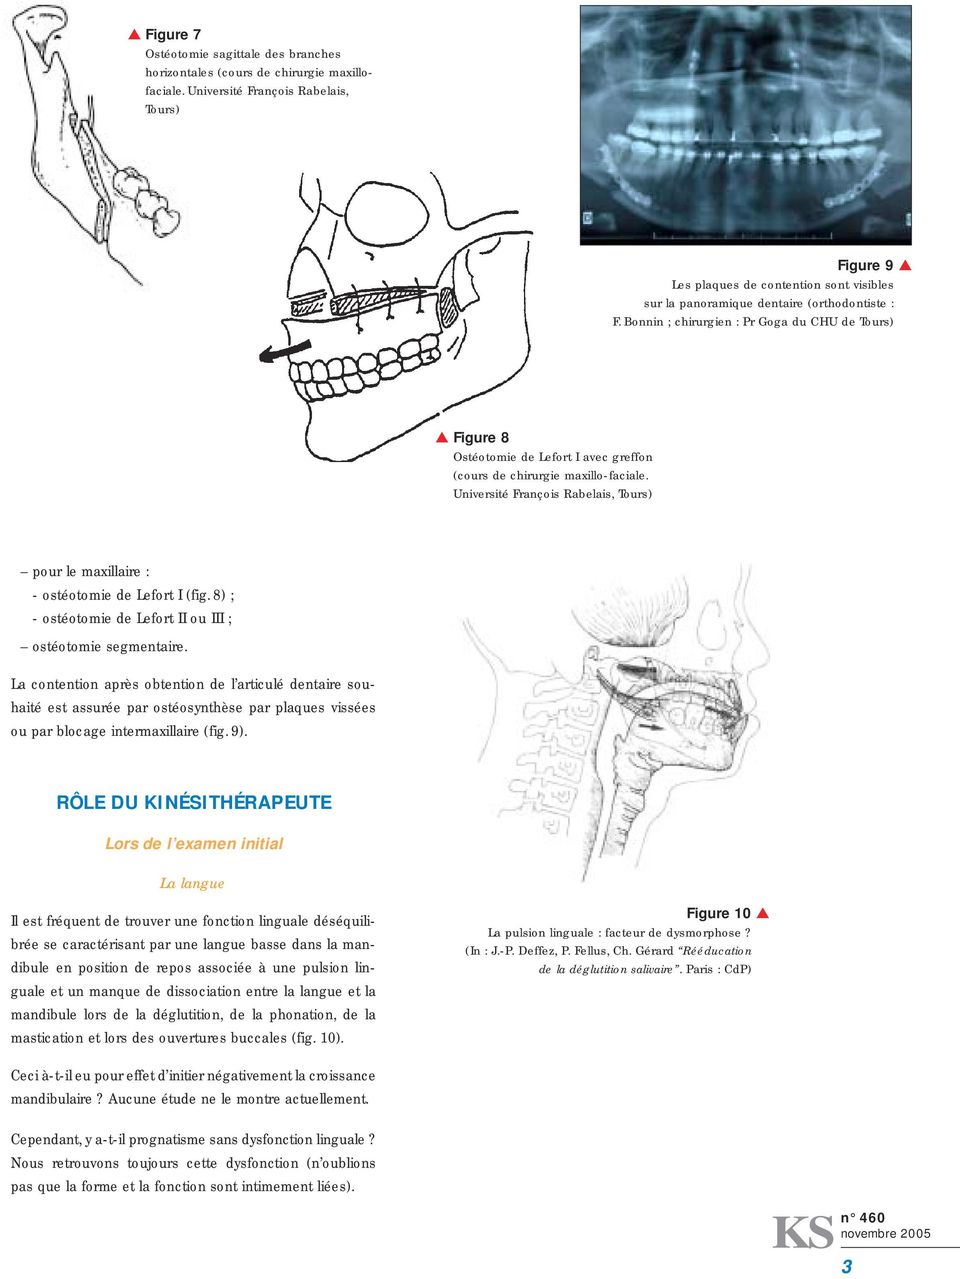 Bonnin ; chirurgien : Pr Goga du CHU de Tours) Figure 8 Ostéotomie de Lefort I avec greffon (cours de chirurgie maxillo-faciale.